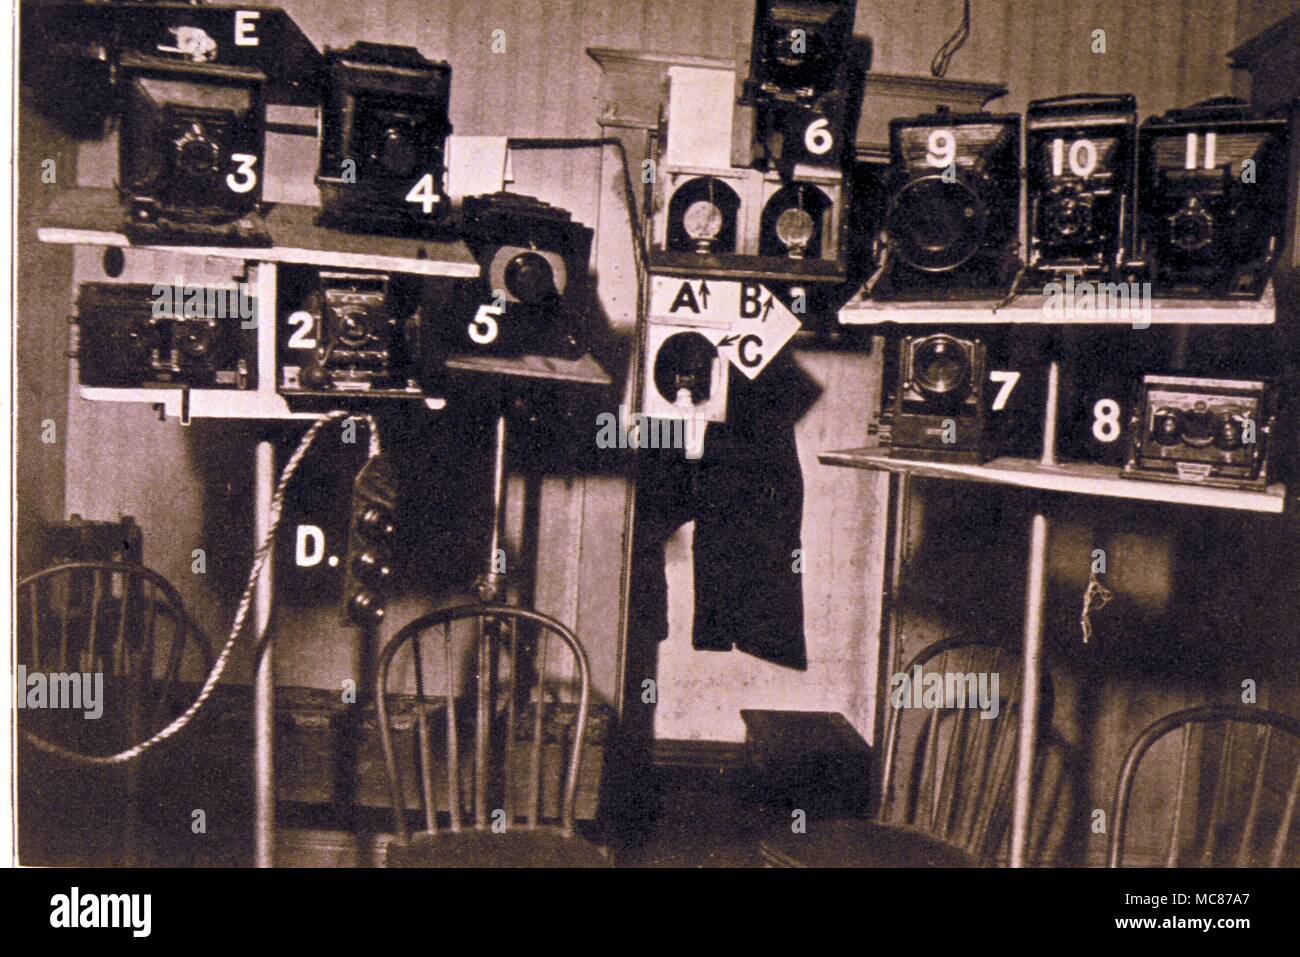 SEANCE esempio della gamma di telecamere (perlopiù sincronizzata per flash) che sono stati utilizzati nel corso dell'inchiesta di esperienze tramite medium nel 1920s, sotto la direzione dei funzionari del Collegio di scienza psichica, Londra. Foto Stock